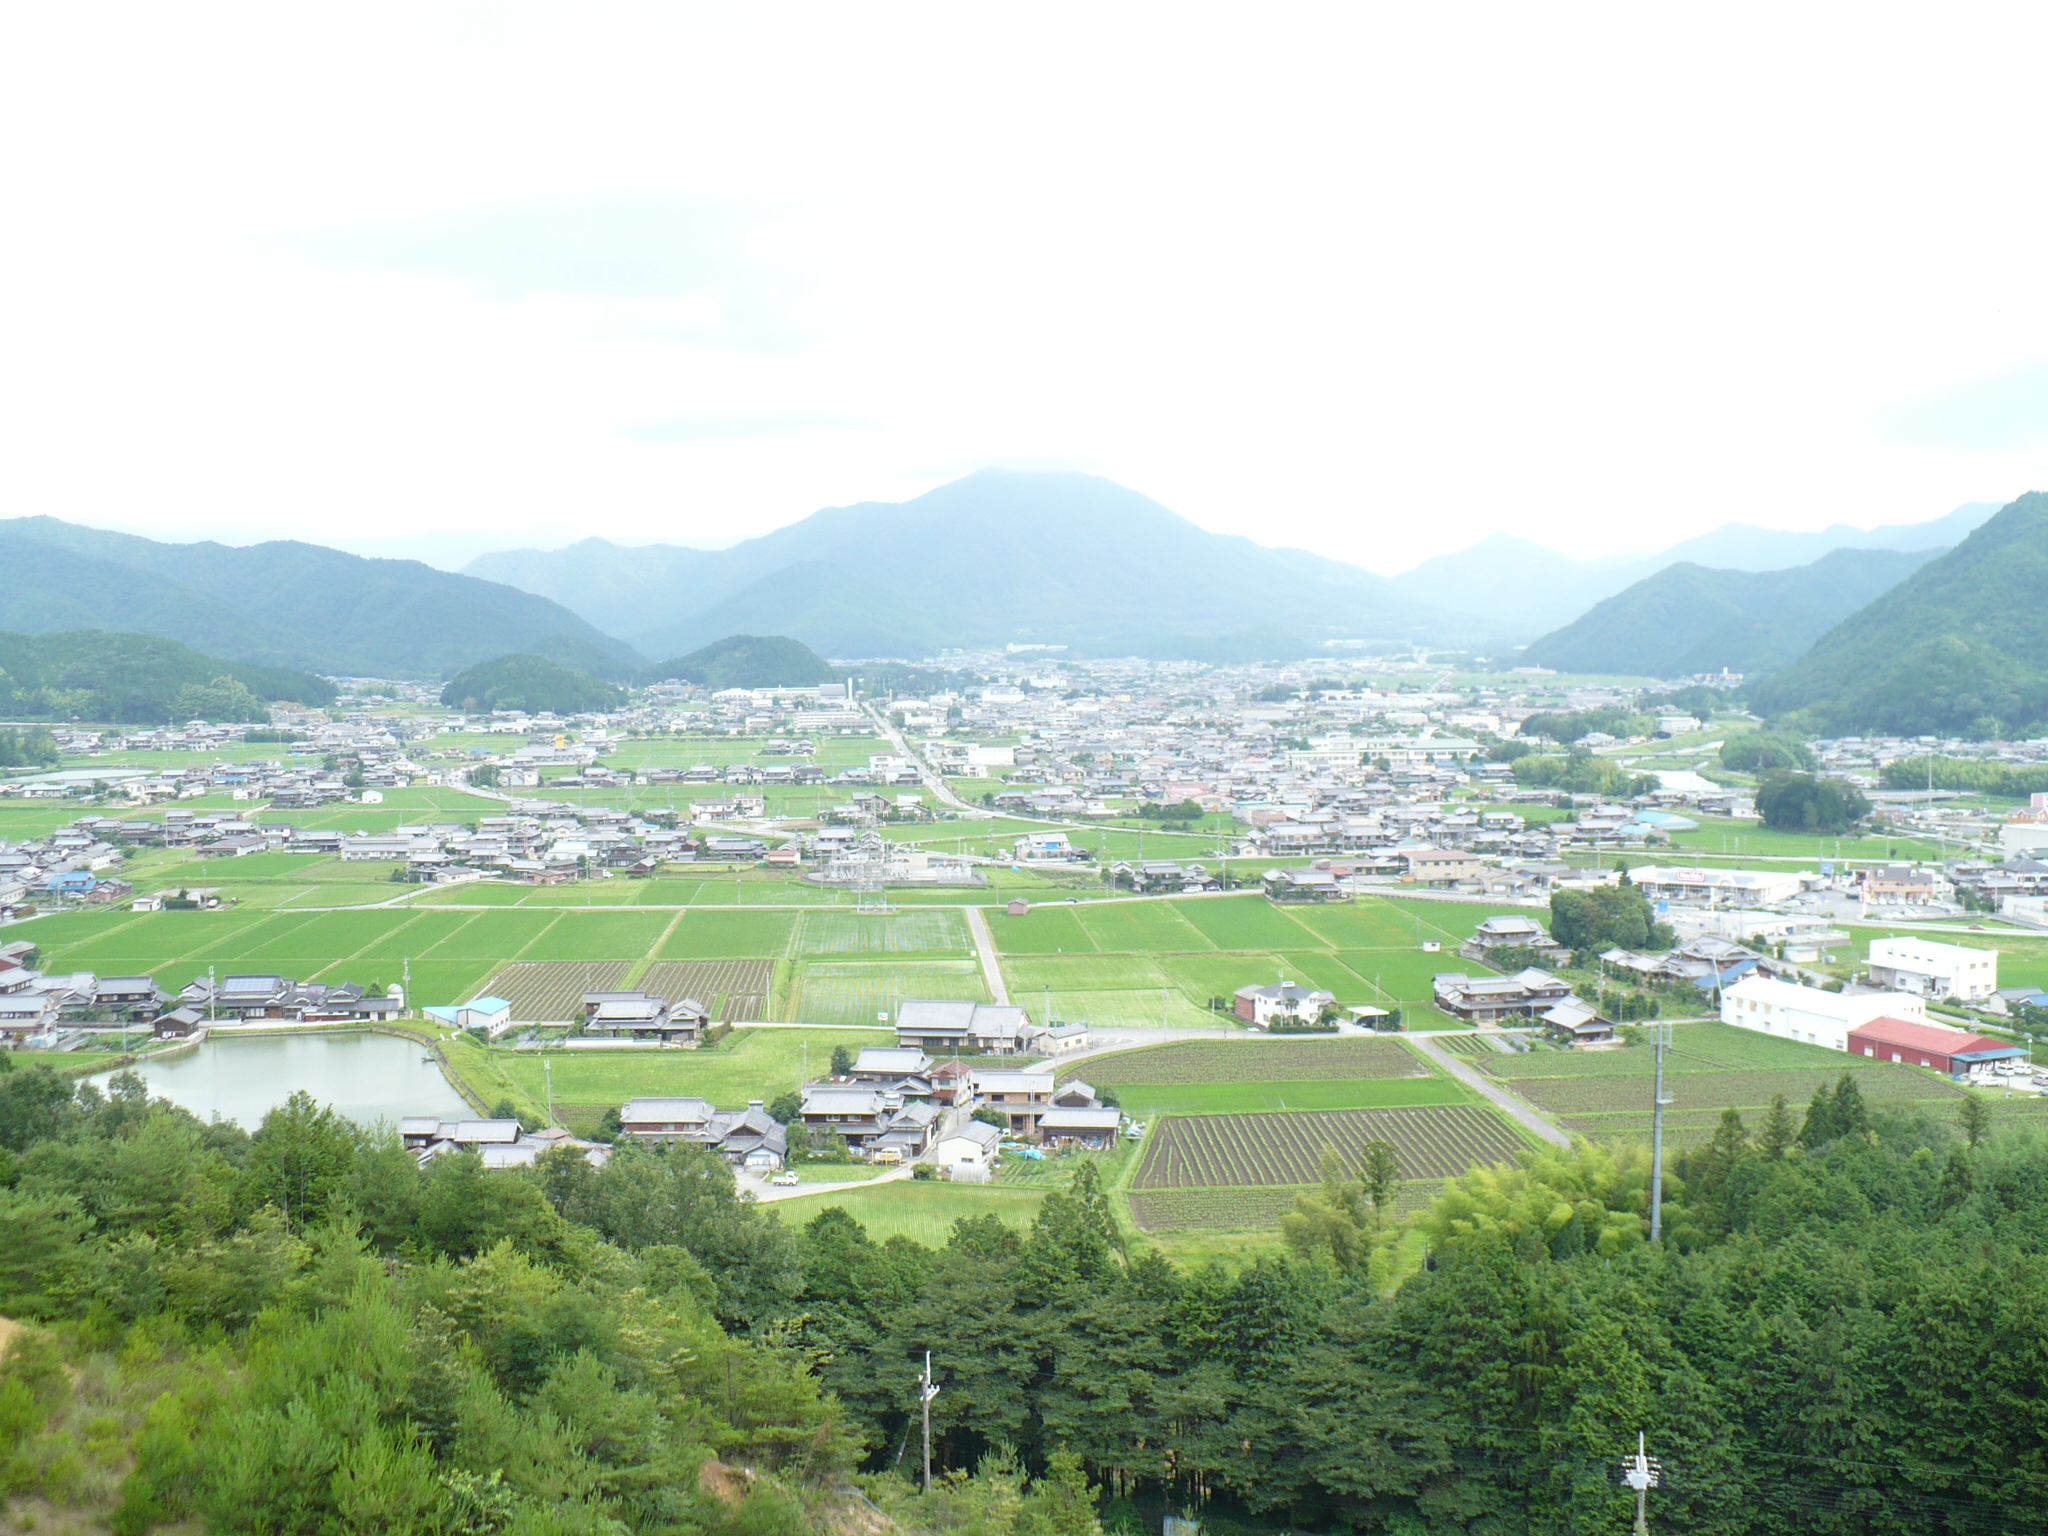 環境保全型農業で地域活性化！
兵庫県多可町の農地を守っていきたい！